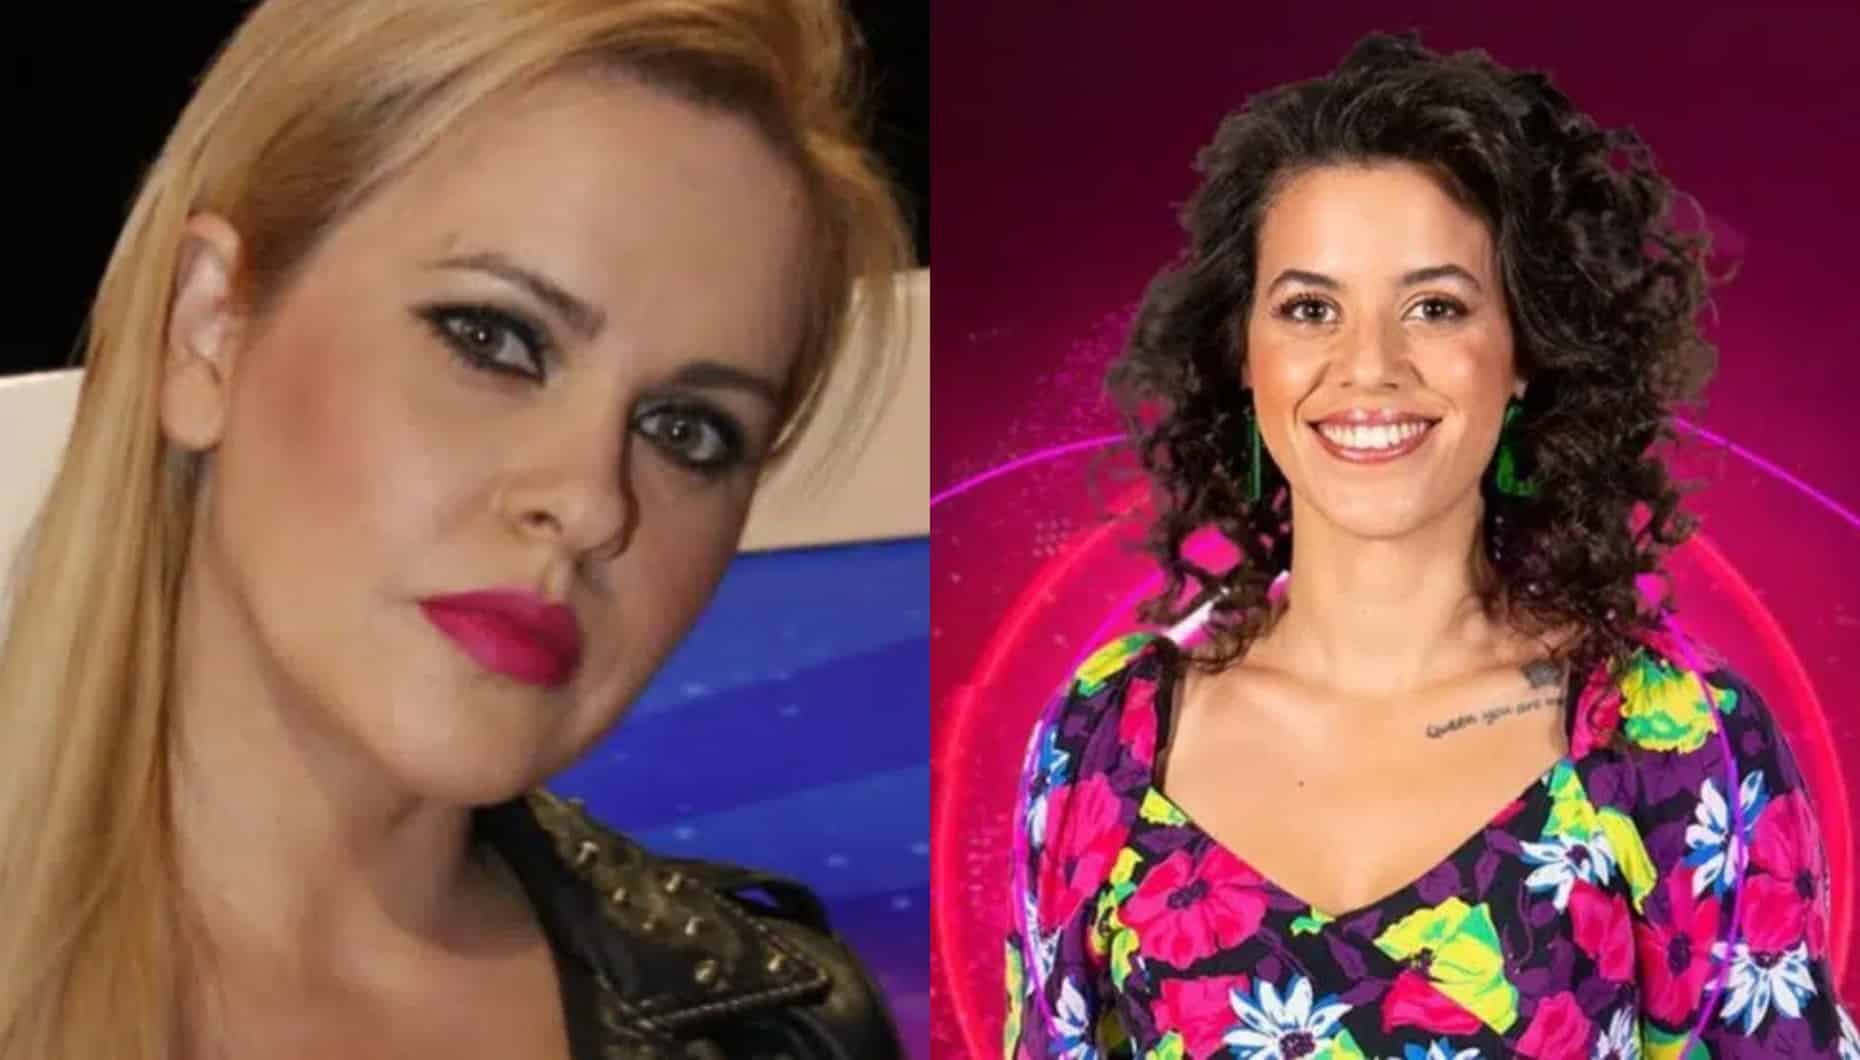 Rute Freitas, Catarina Severiano